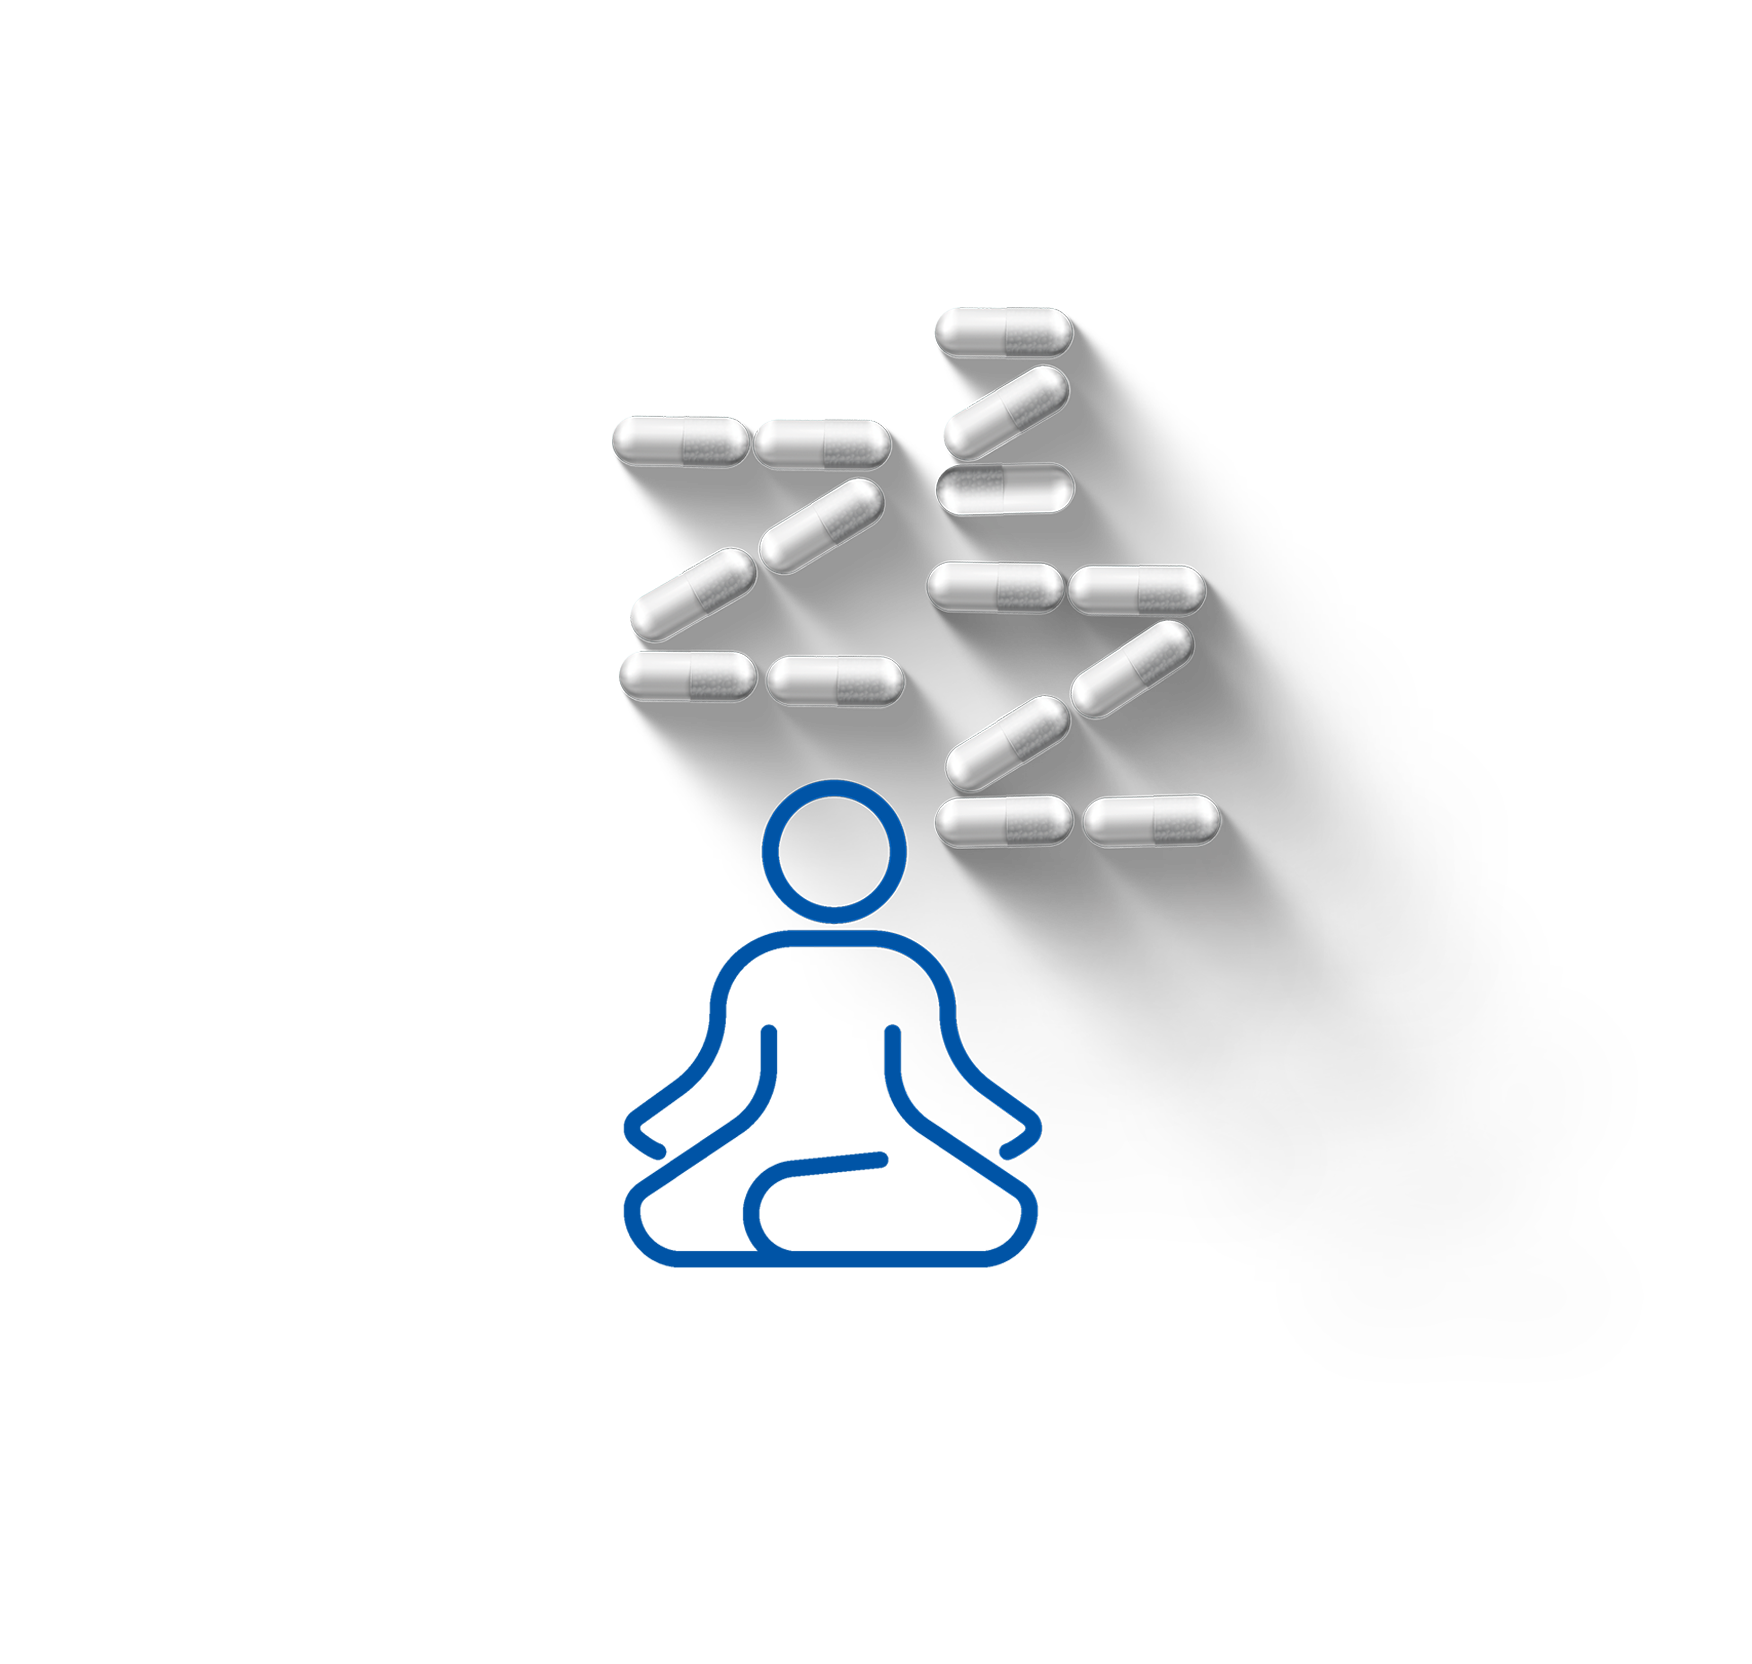 piktogram za Calm & Sleep kategoriju